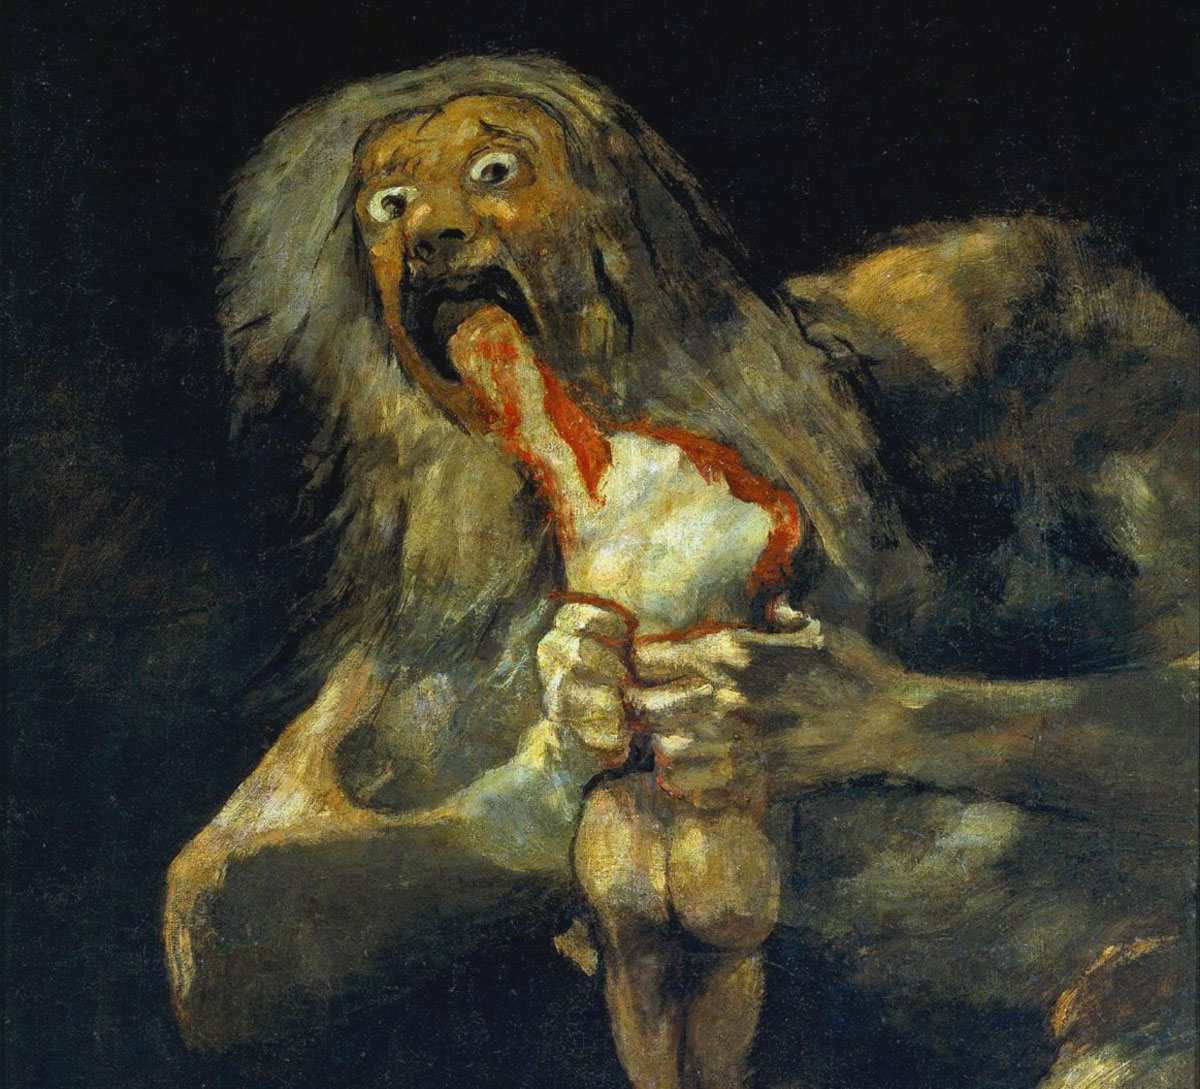 La Storia in breve: Il mito dei Cannibali